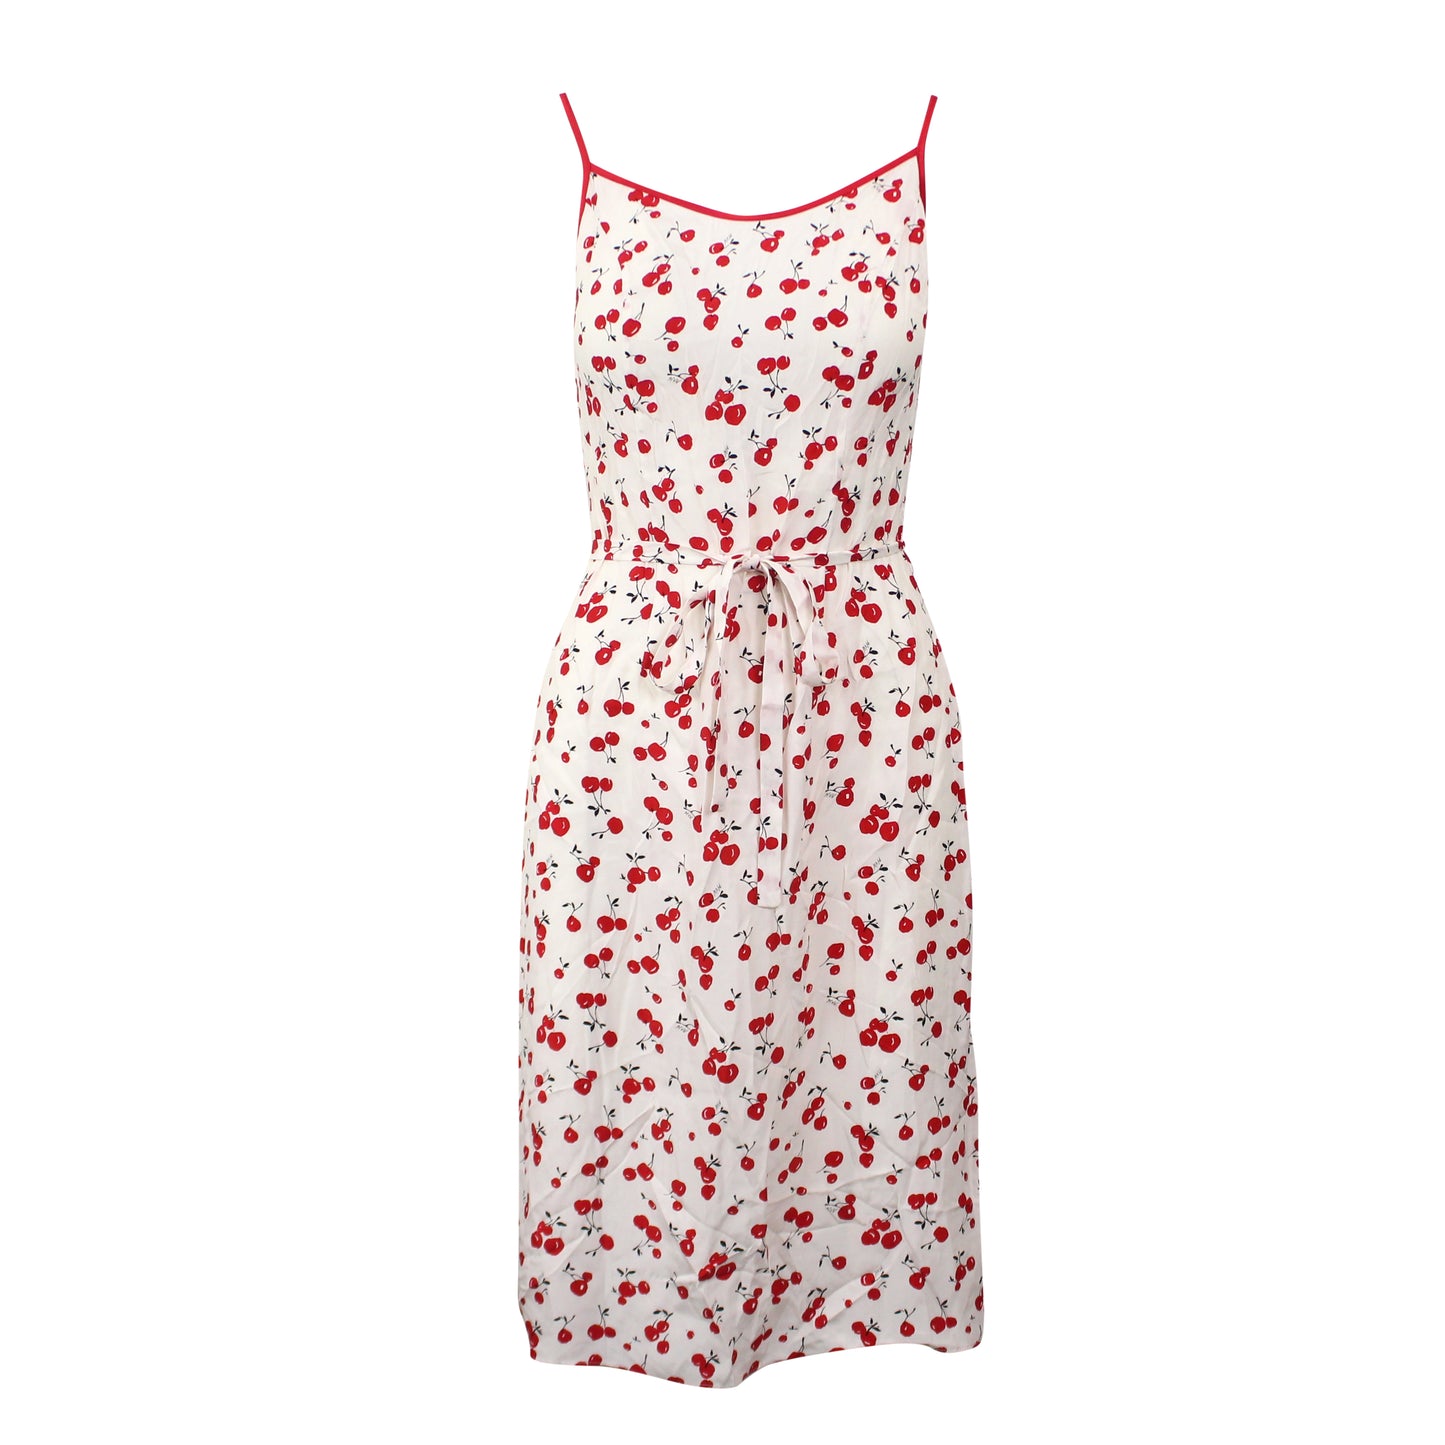 Hvn Susan Round Neck Slip Dress - Red/White